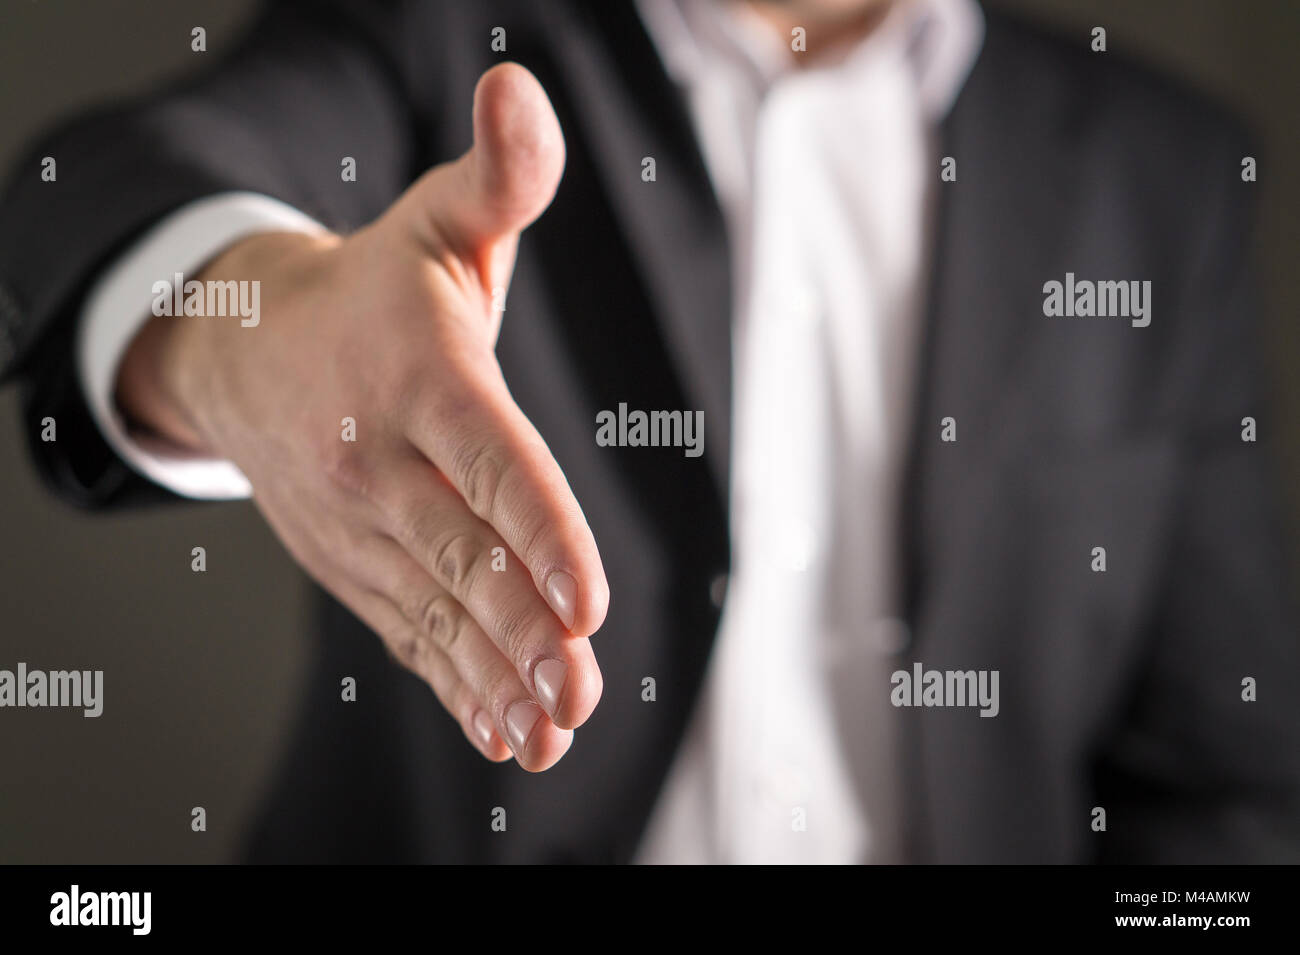 Hombre de negocios ofrecen y dan la mano para el apretón de manos. El vendedor o agente inmobiliario agitar para tratar, acuerdo o venta. La asociación, contratación, adquisición Foto de stock